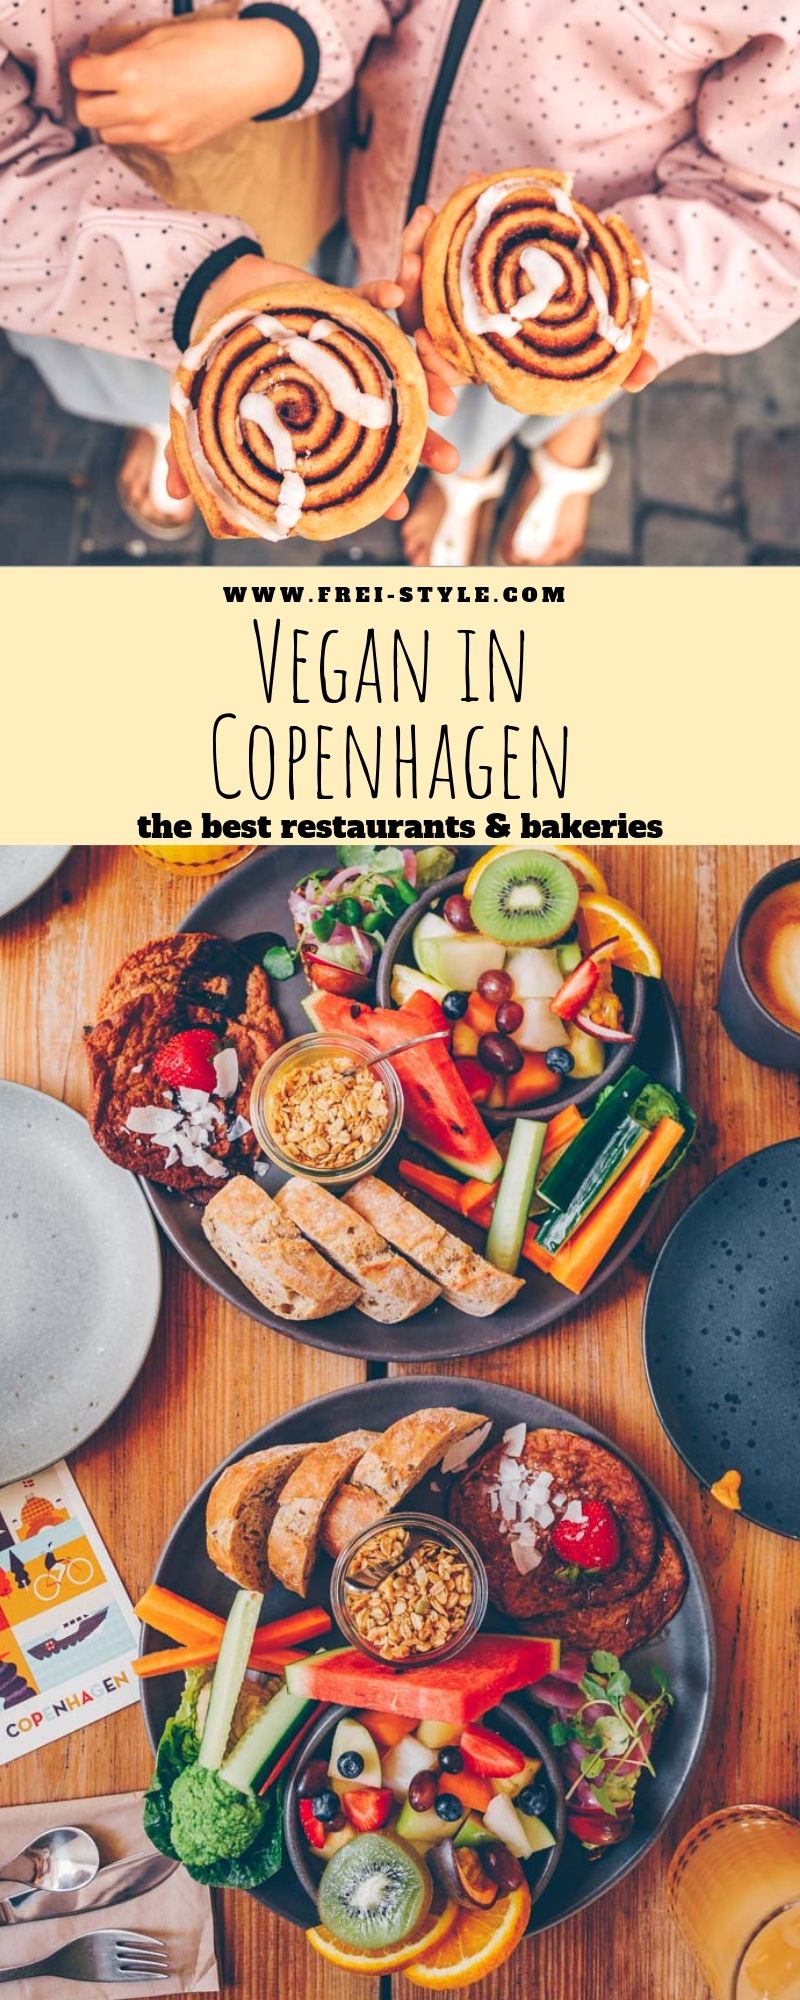 Vegan in Copenhagen